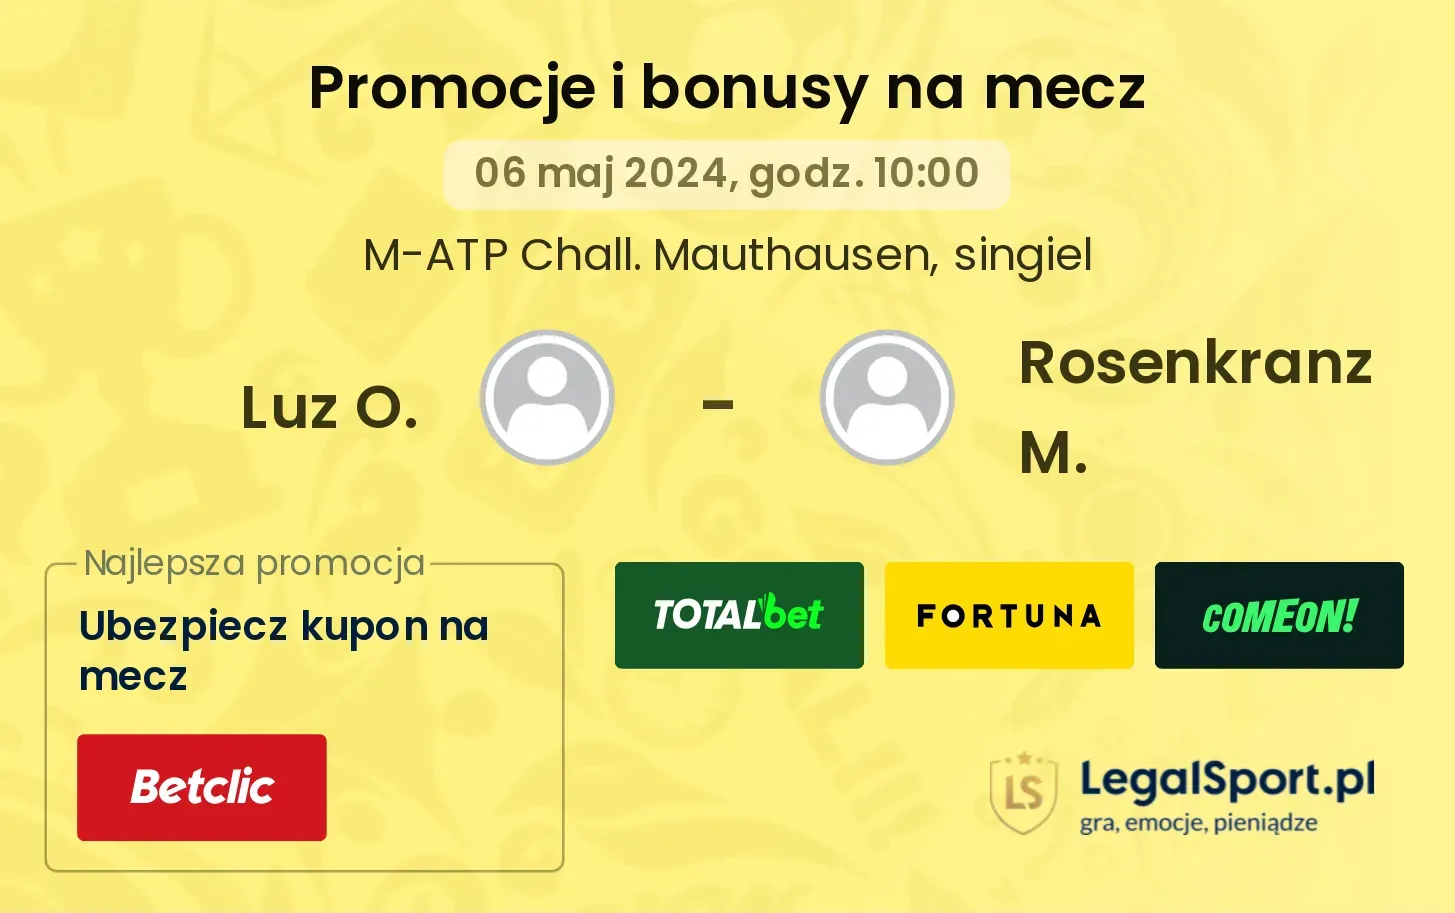 Luz O. - Rosenkranz M. promocje bonusy na mecz